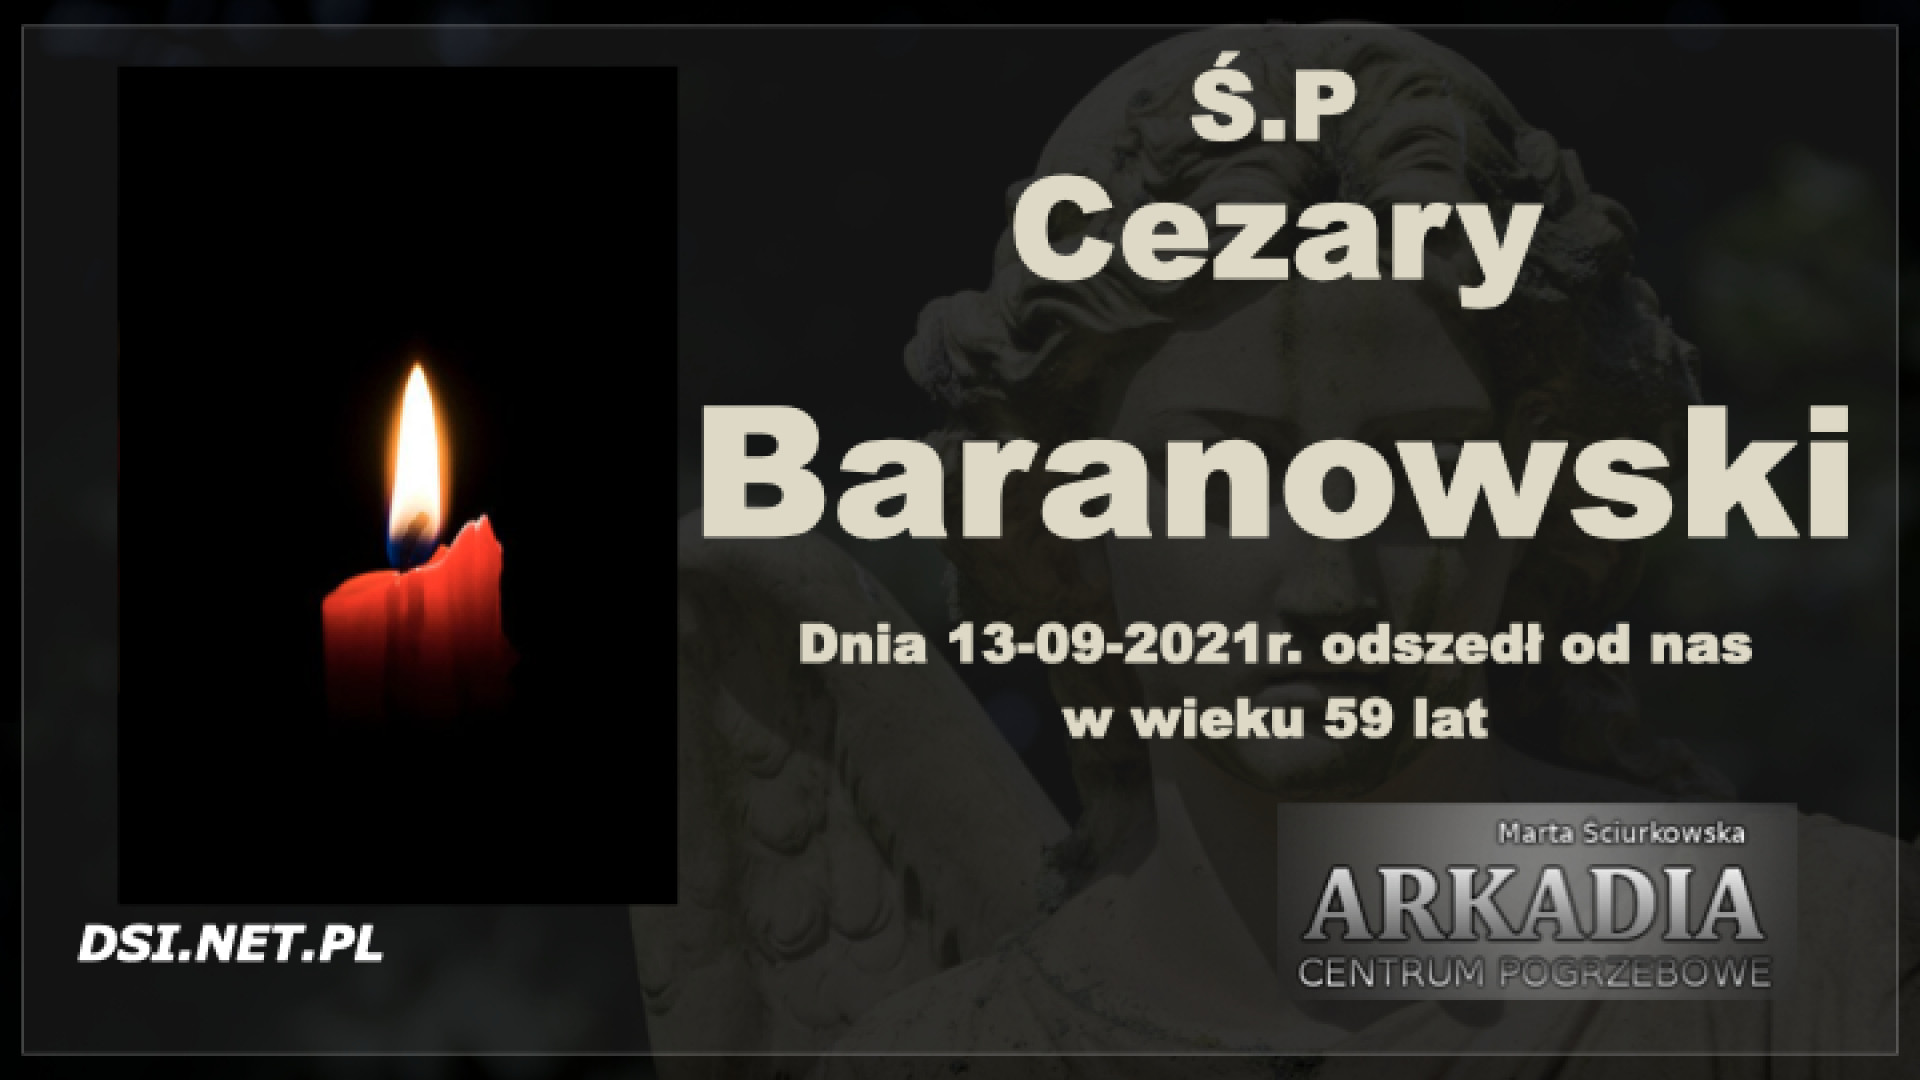 Ś.P. Cezary Baranowski